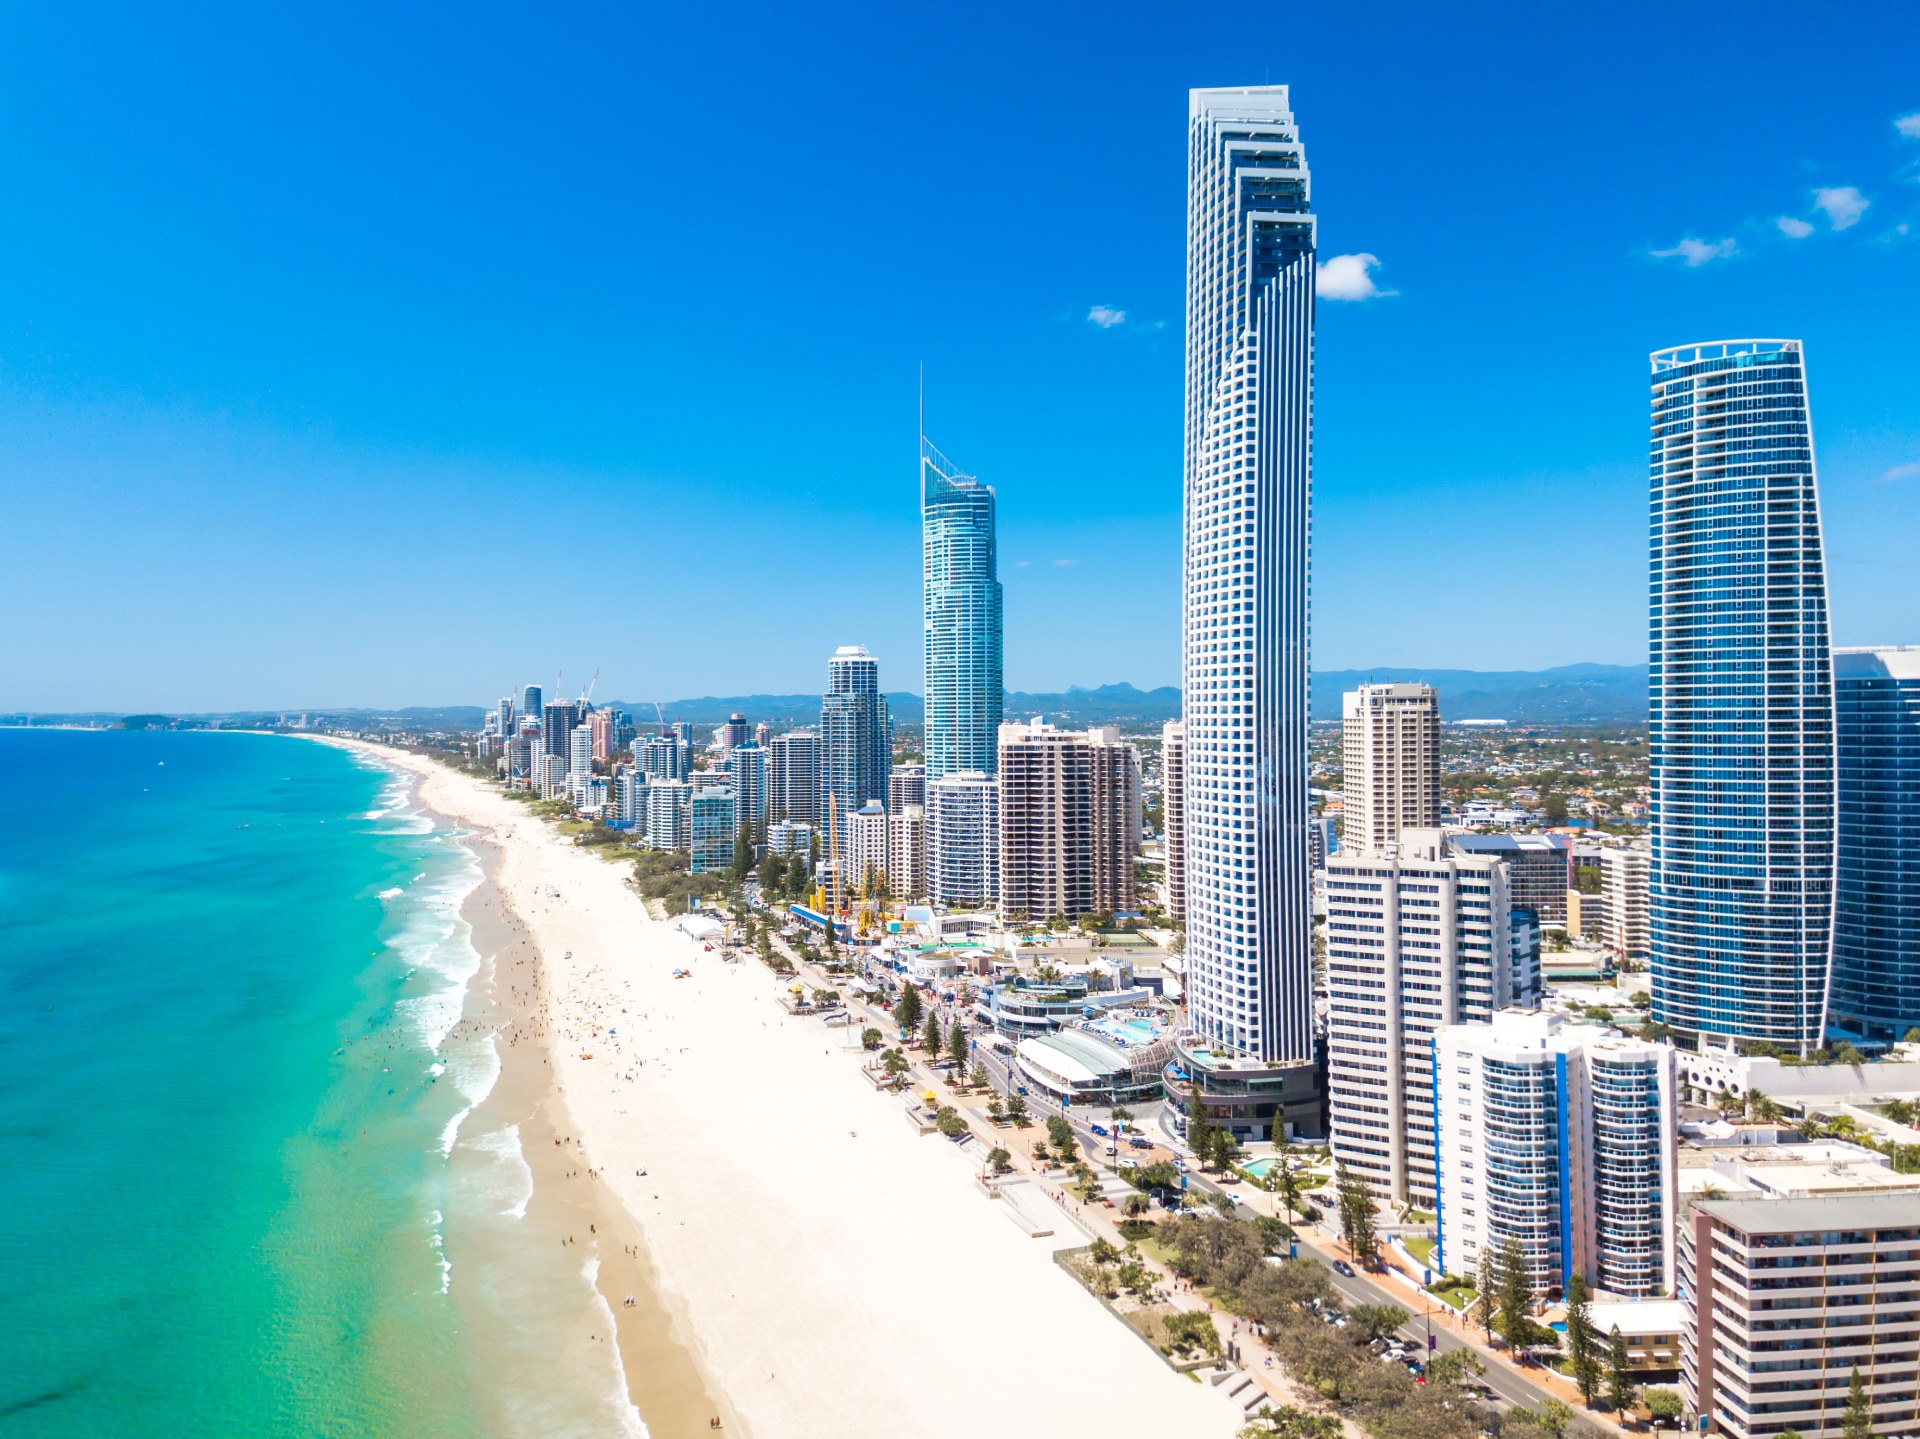 Q1 Gold Coast, der höchste Turm Australiens – We Build Value